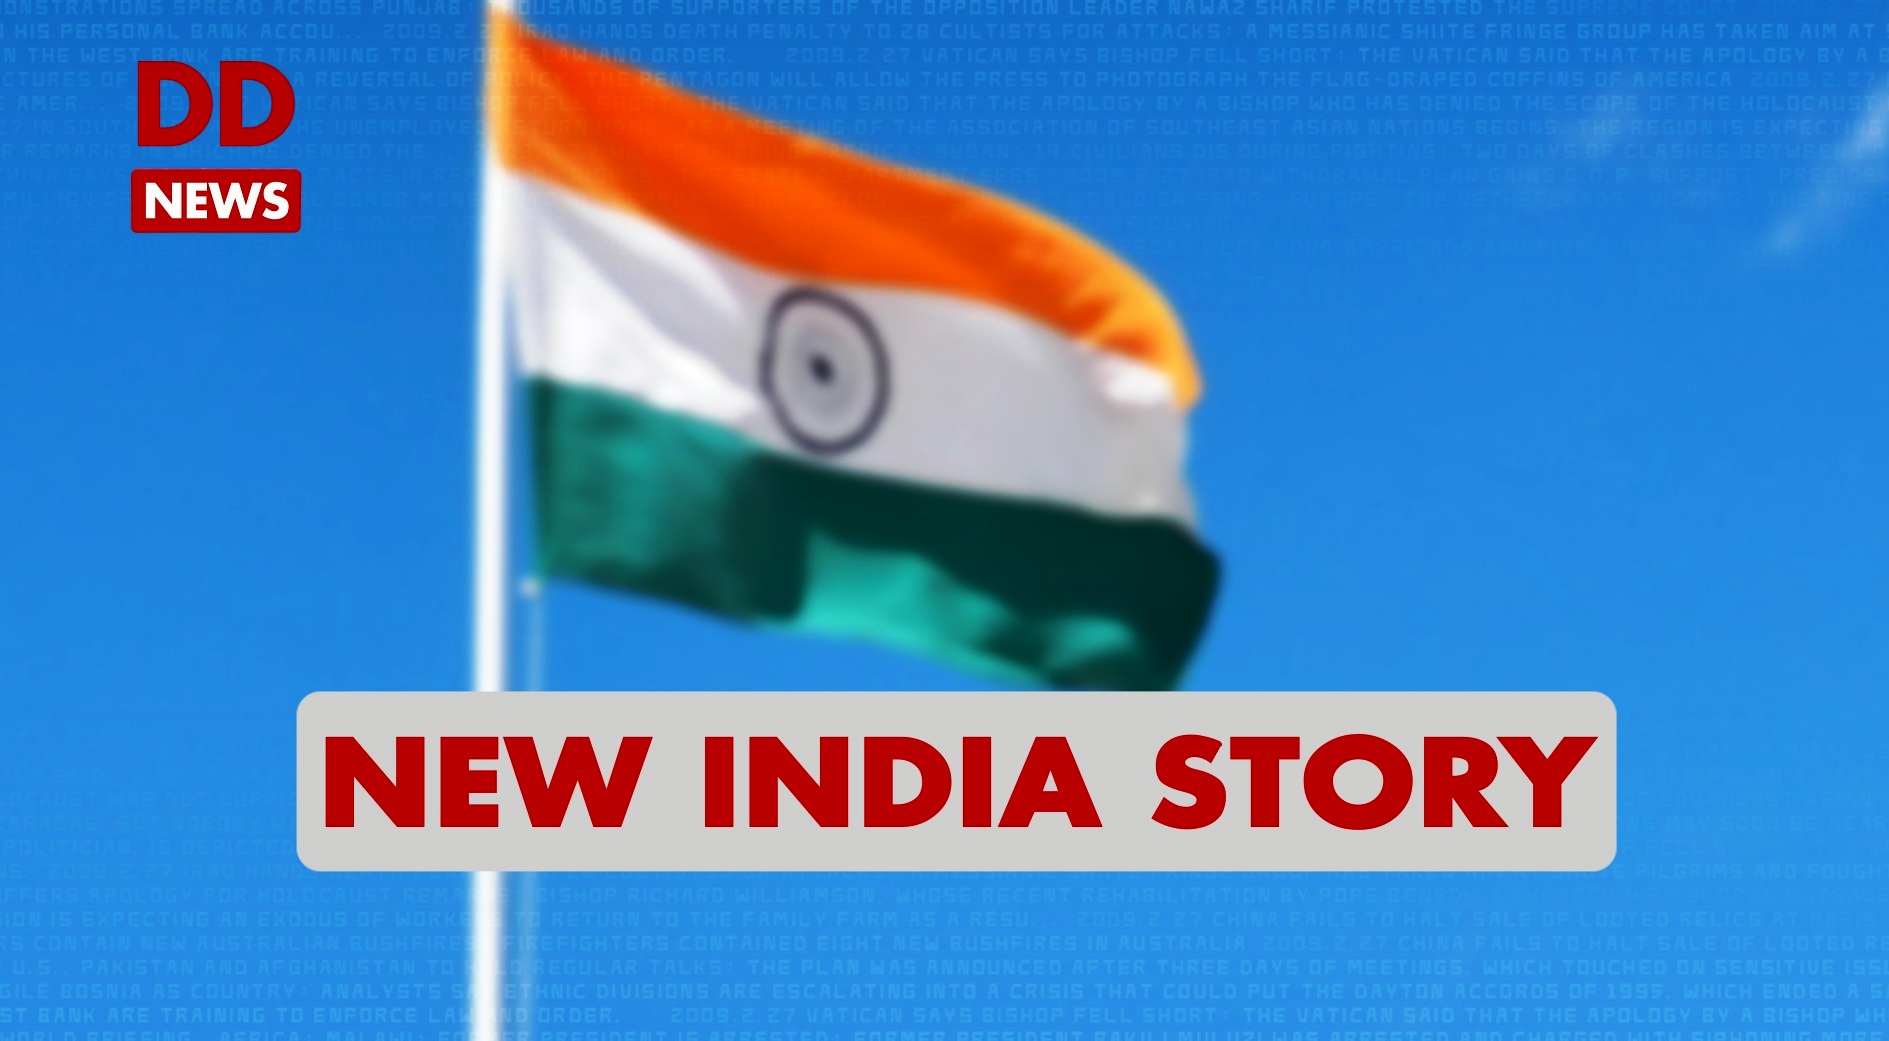 New India Story / Tripura / Dhalai / Pradhan Mantri Gramin Sadak Yojna